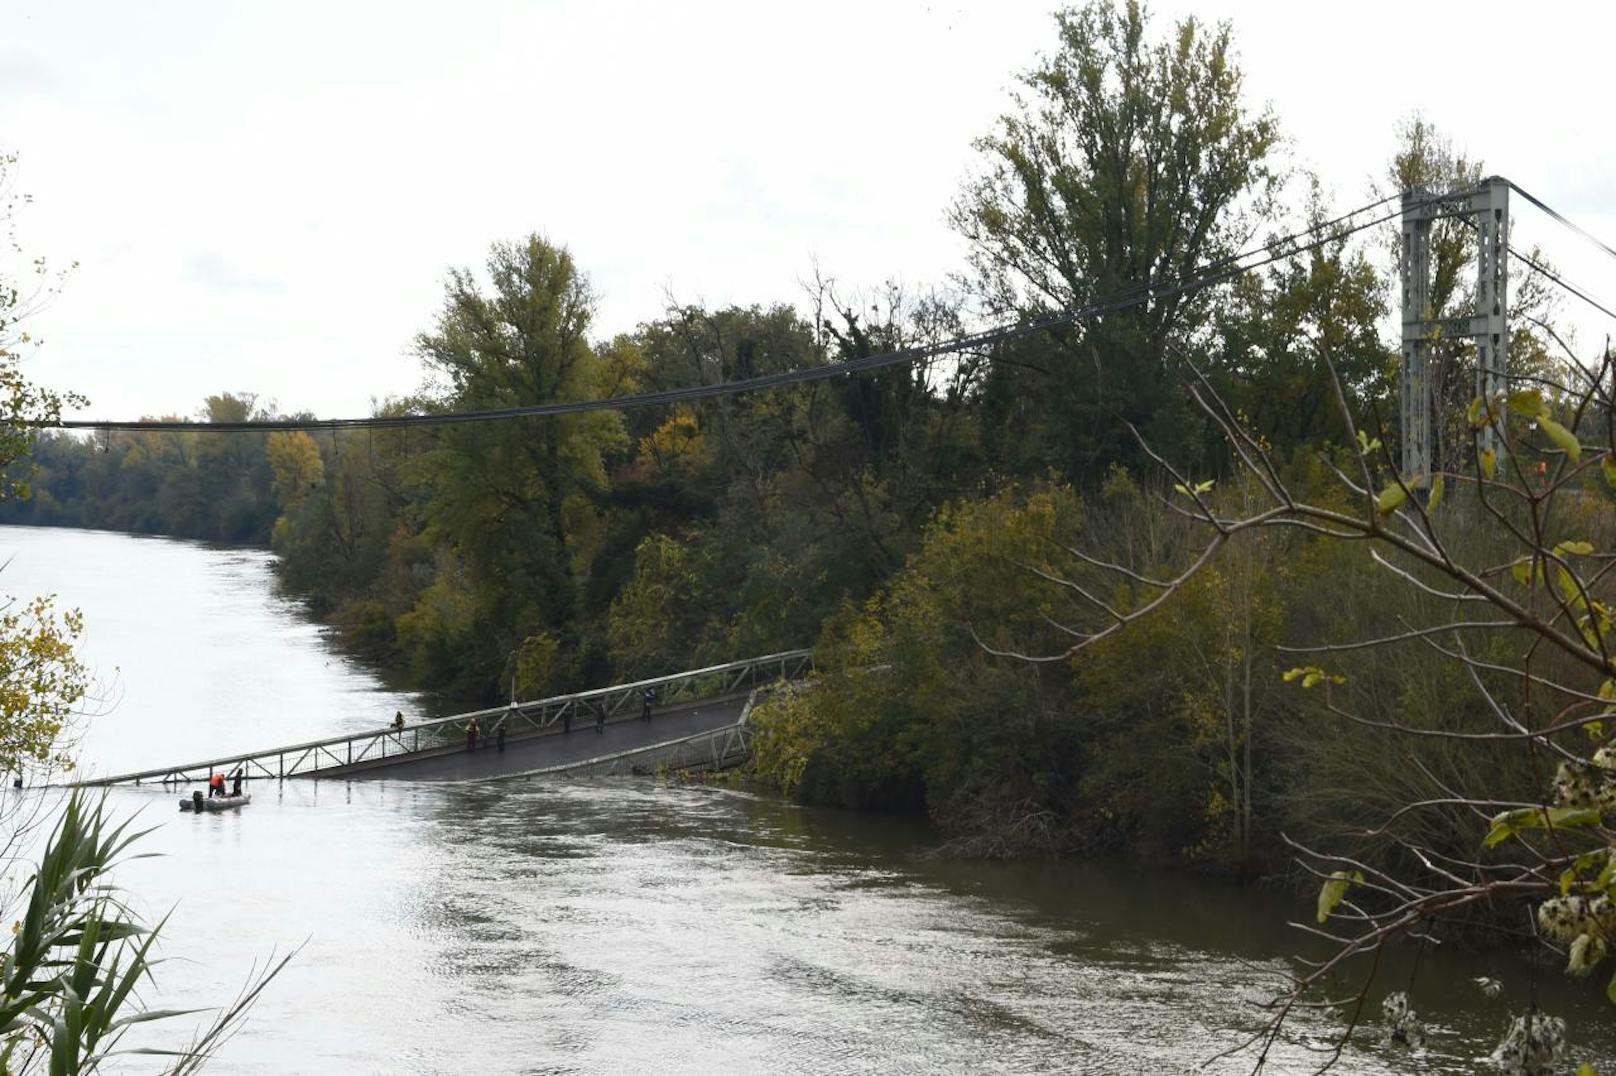 Am Montagvormittag ist eine Brücke in einer Ortschaft nördlich von Toulouse eine Brücke eingestürzt. Dabei starb ein 15-jähriges Mädchen.